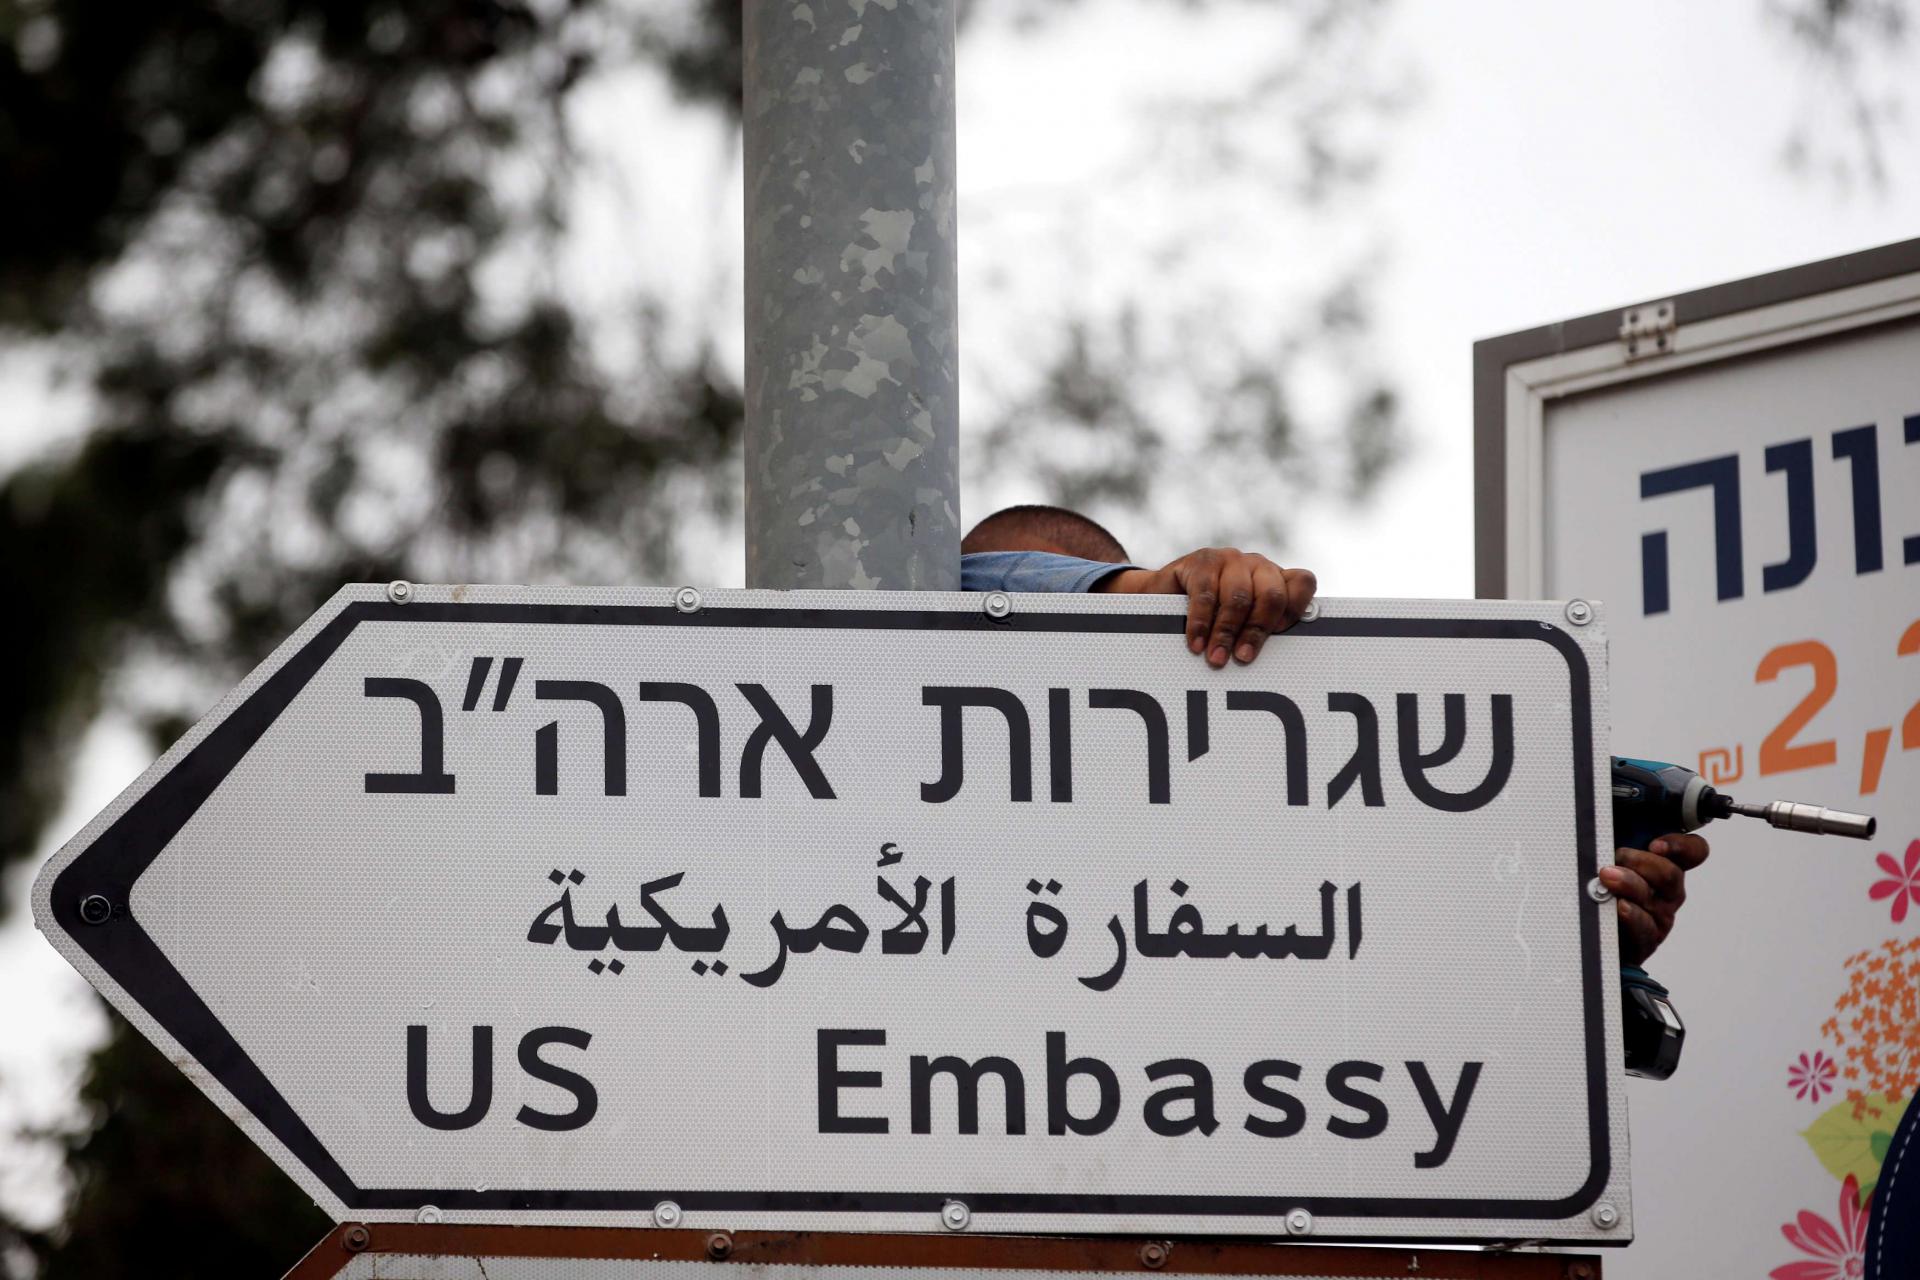  لافتة طريق تشير إلى موقع السفارة الأميركية في القدس